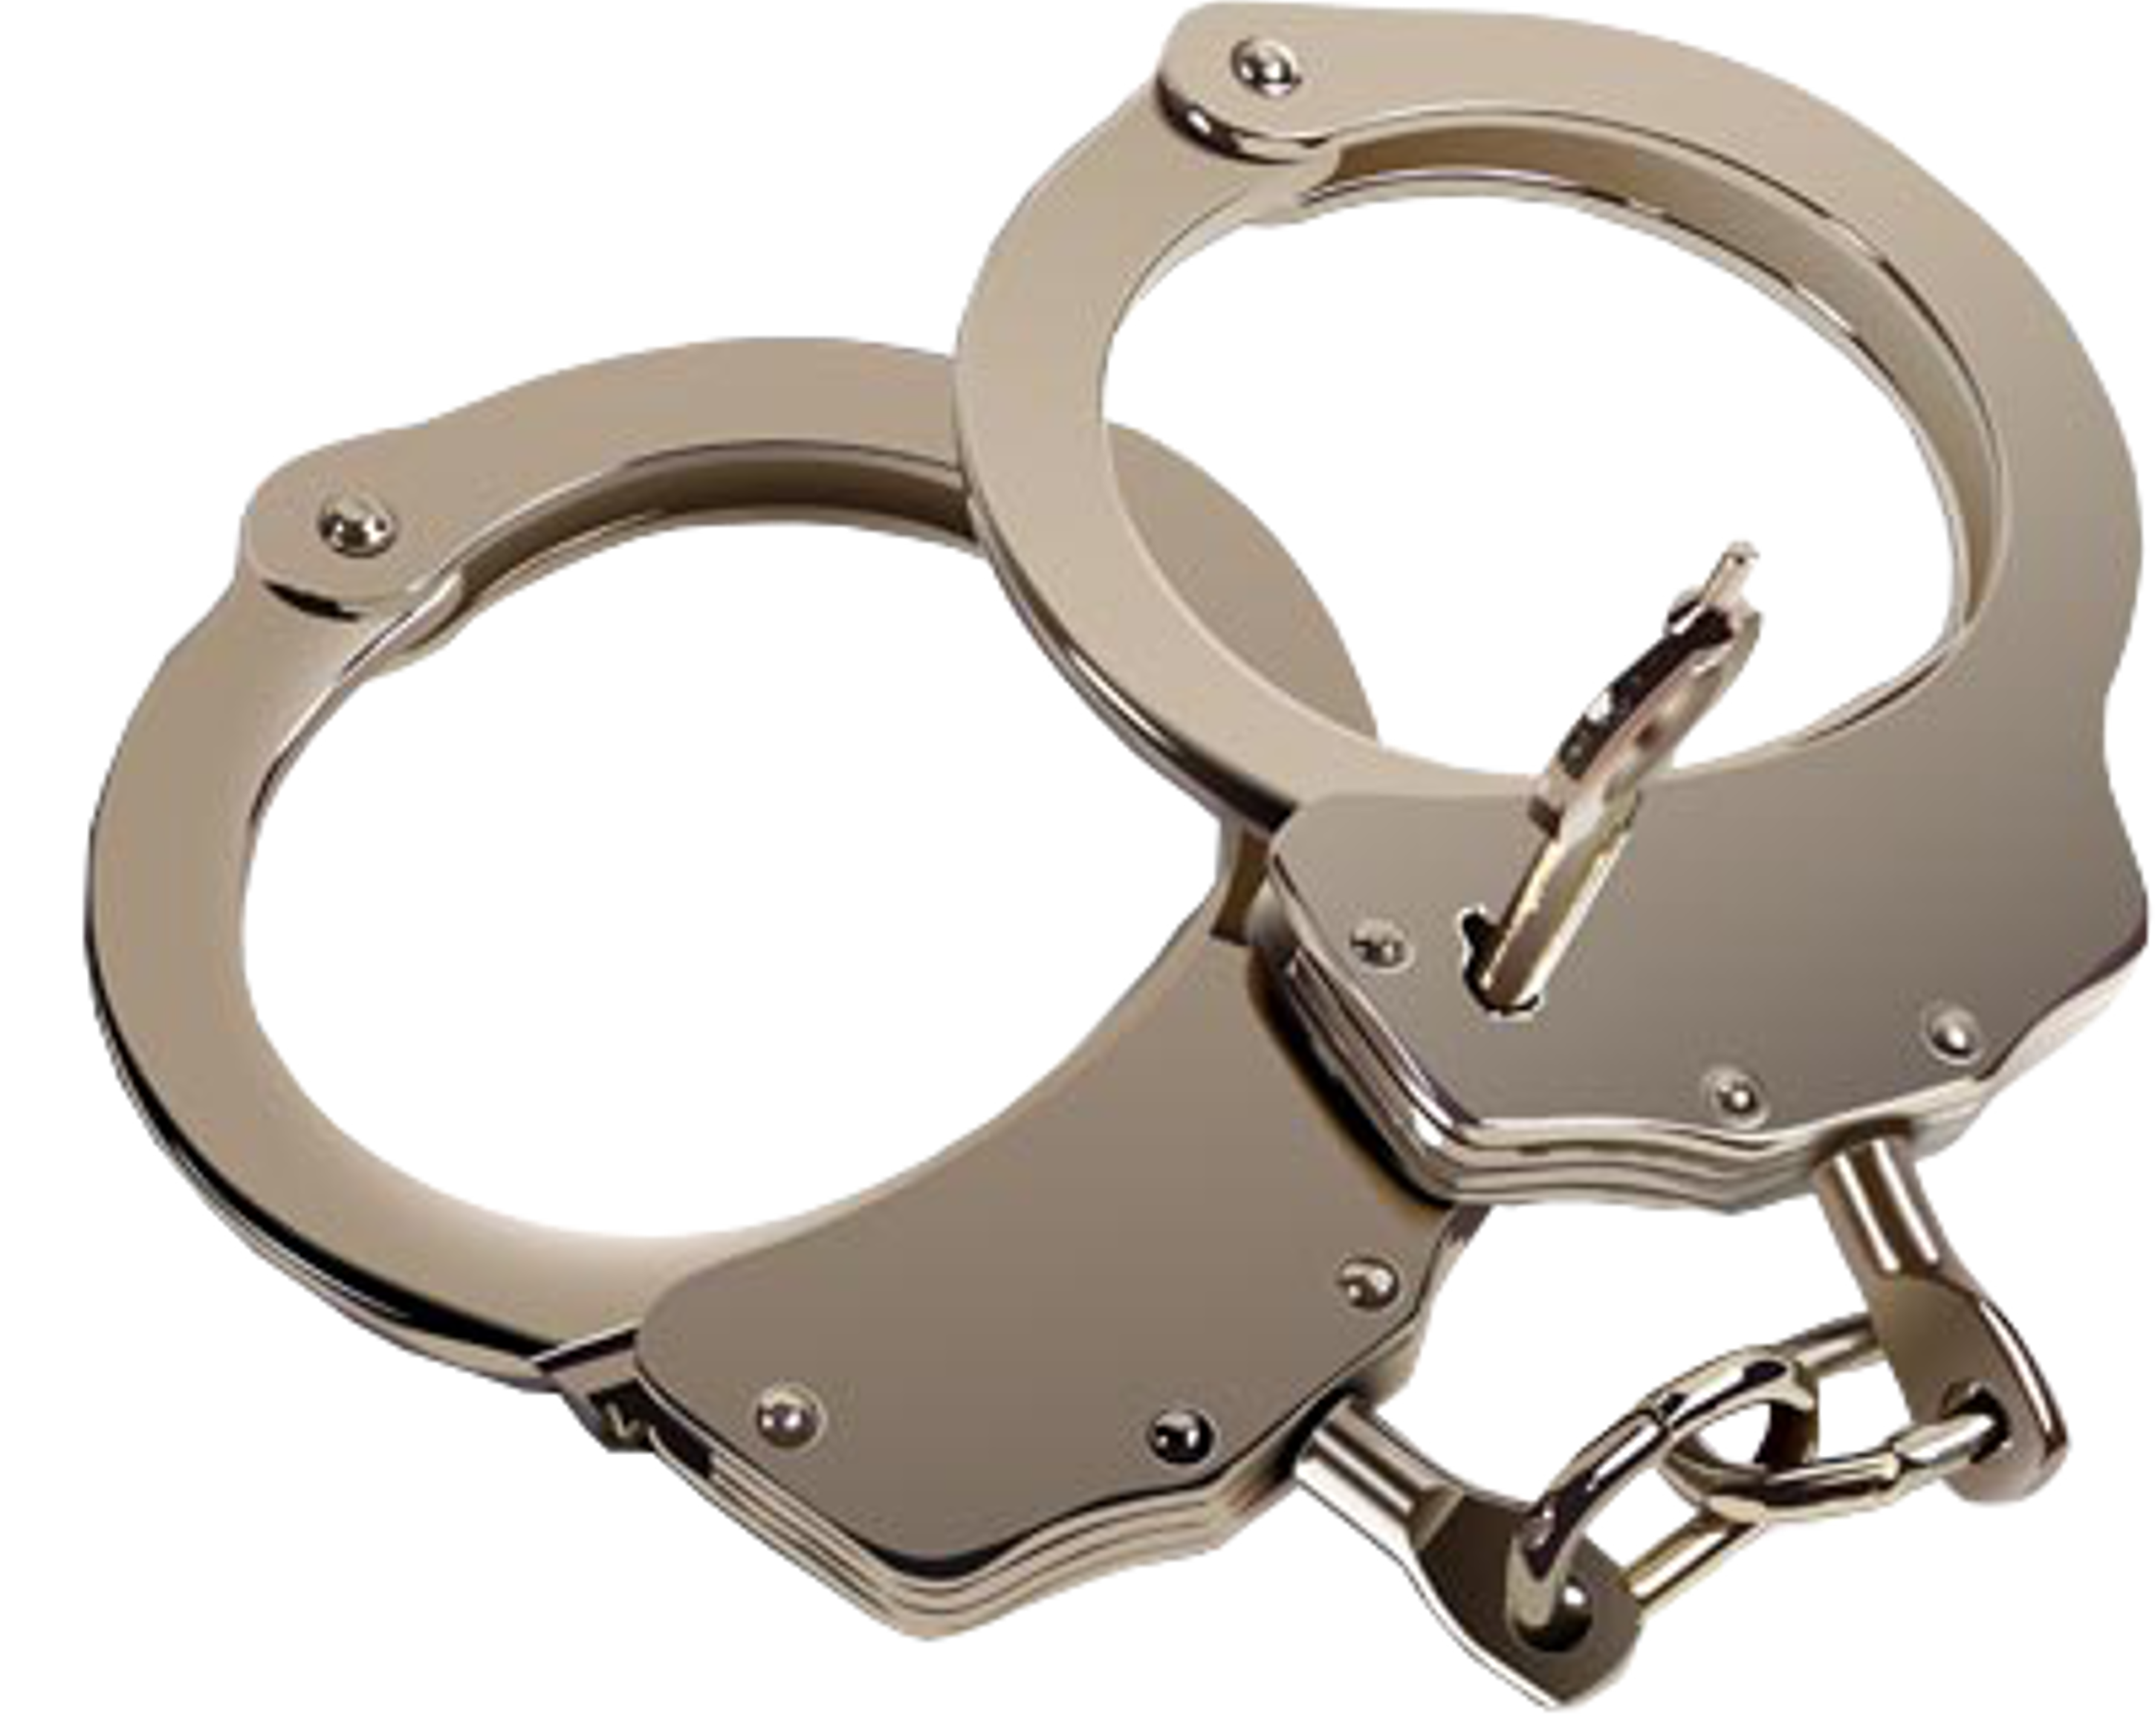 handcuffs, clr cuffs images clkerm vector clip art online royalty domain #29588